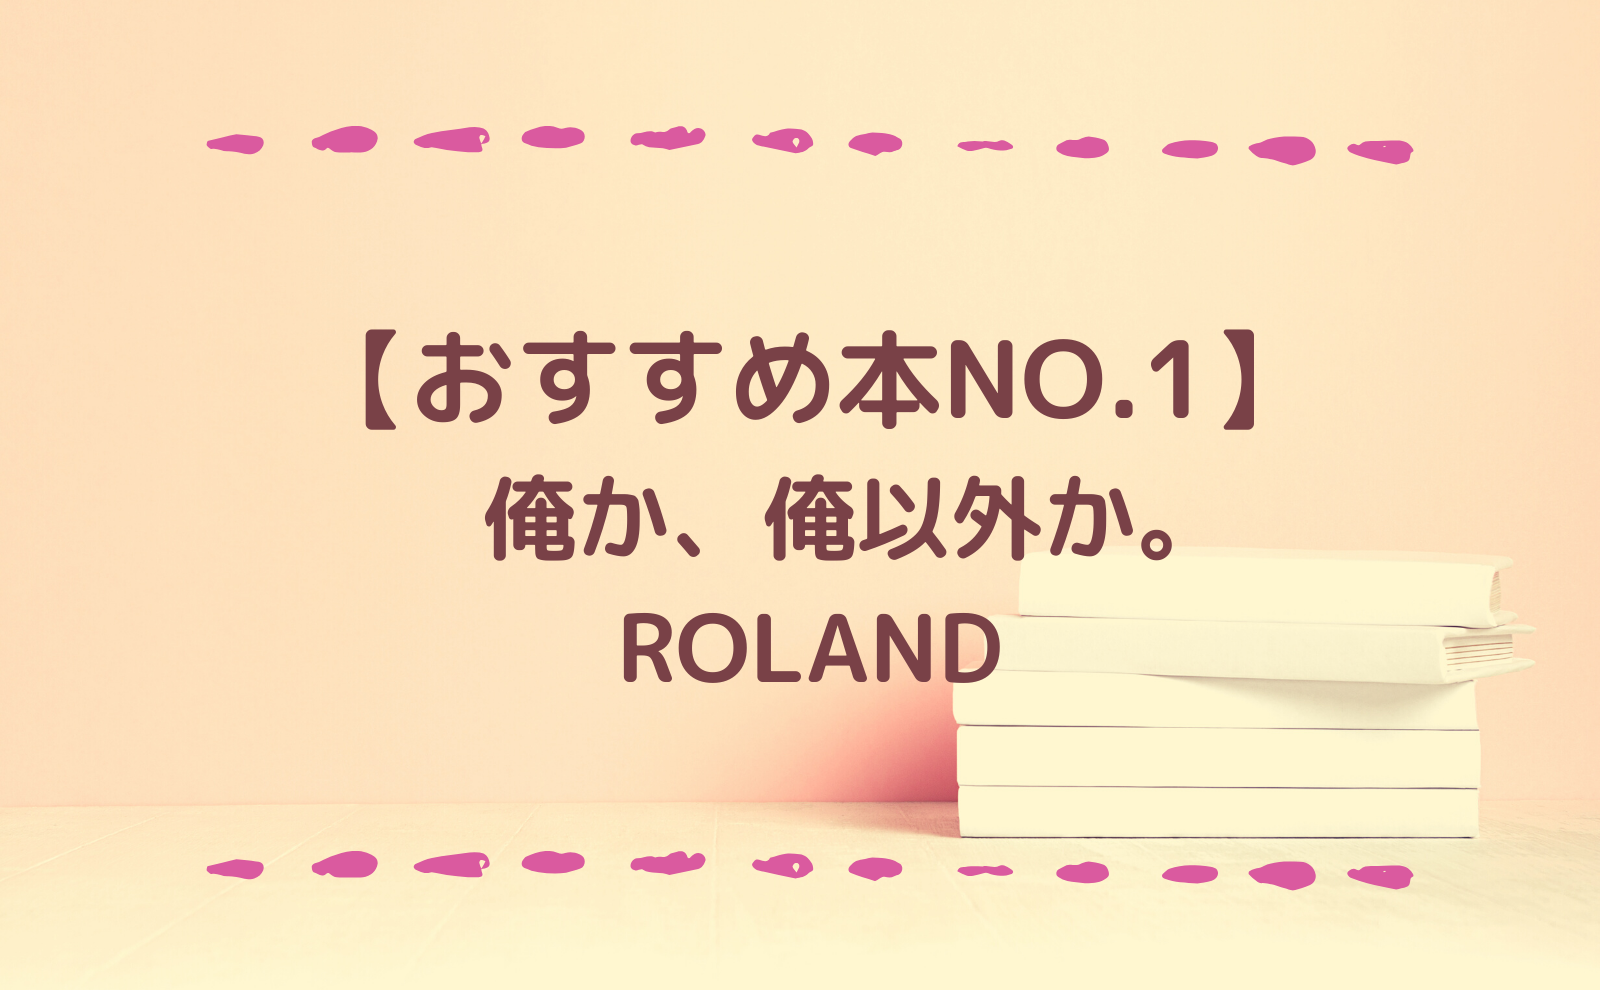 おすすめ本 Roland 俺か 俺以外か あまーん 恋愛 人生blog